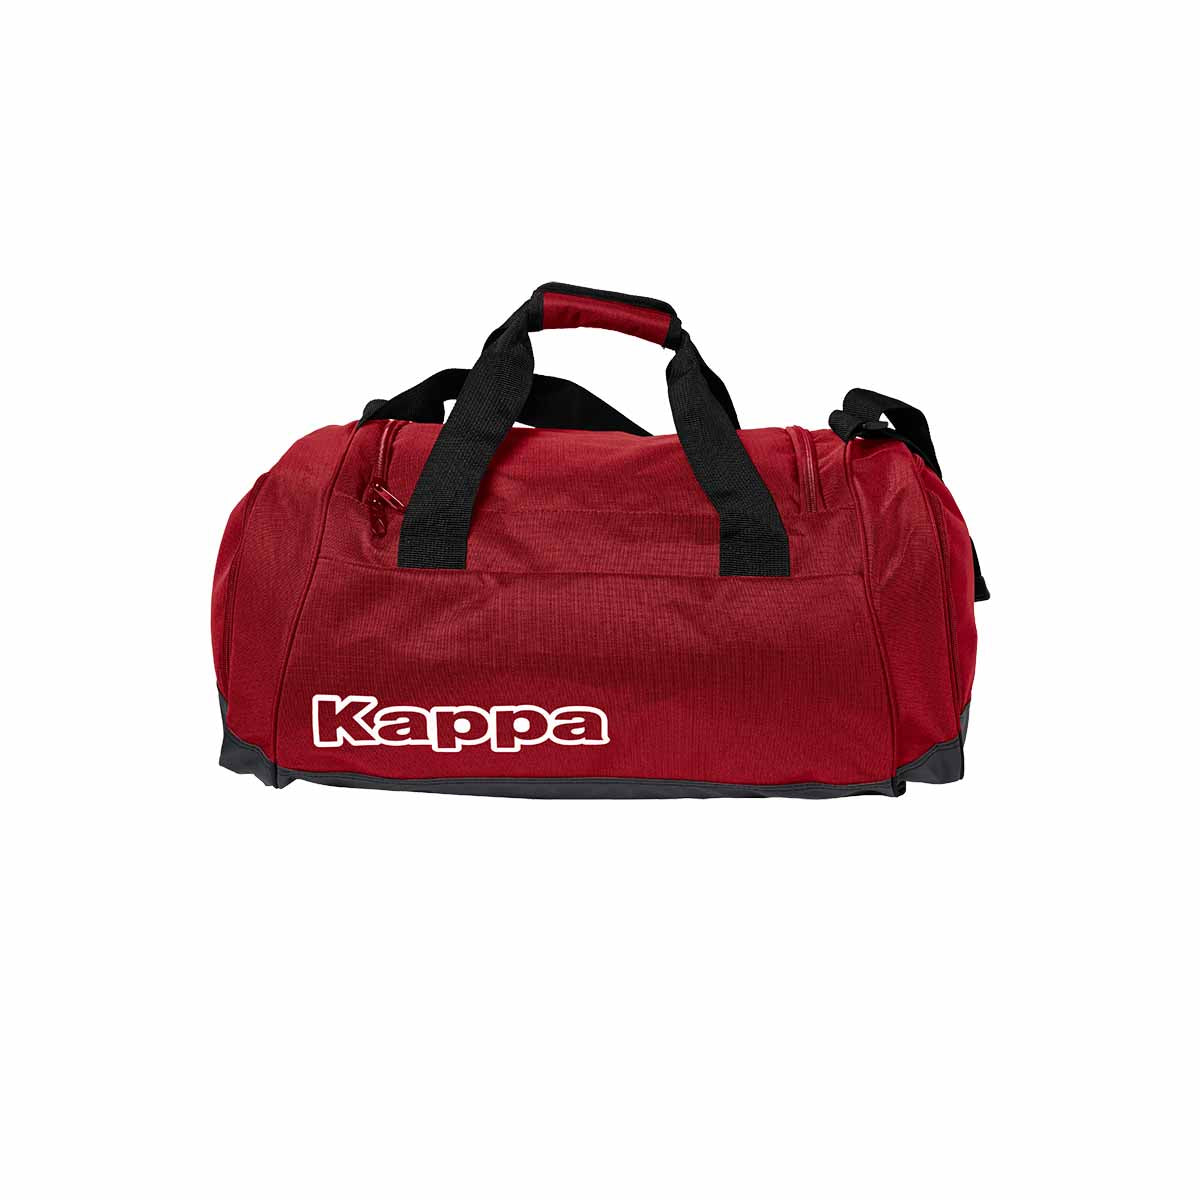 Bolsa Grenno Sport Bag Rojo Unisex